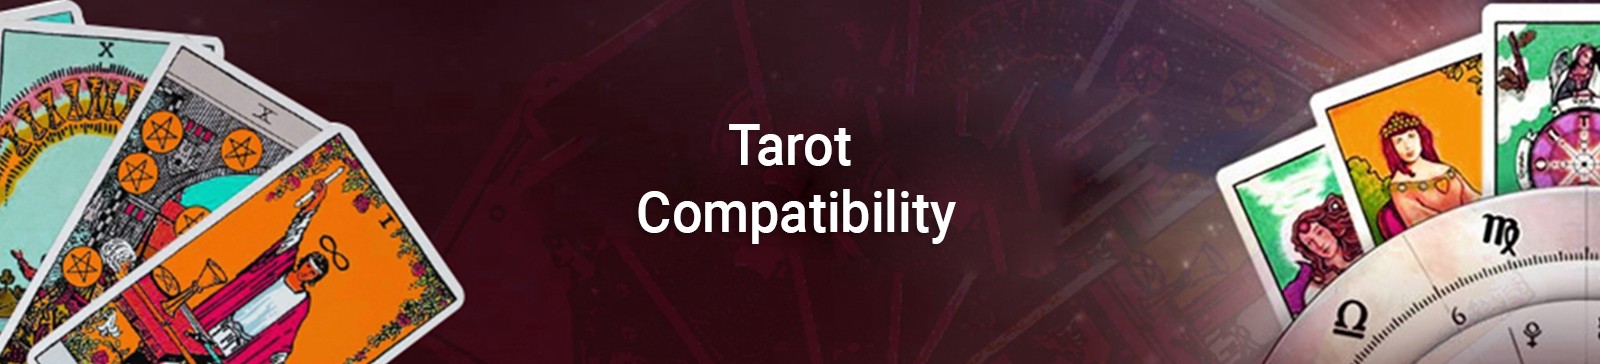 tarot-Image